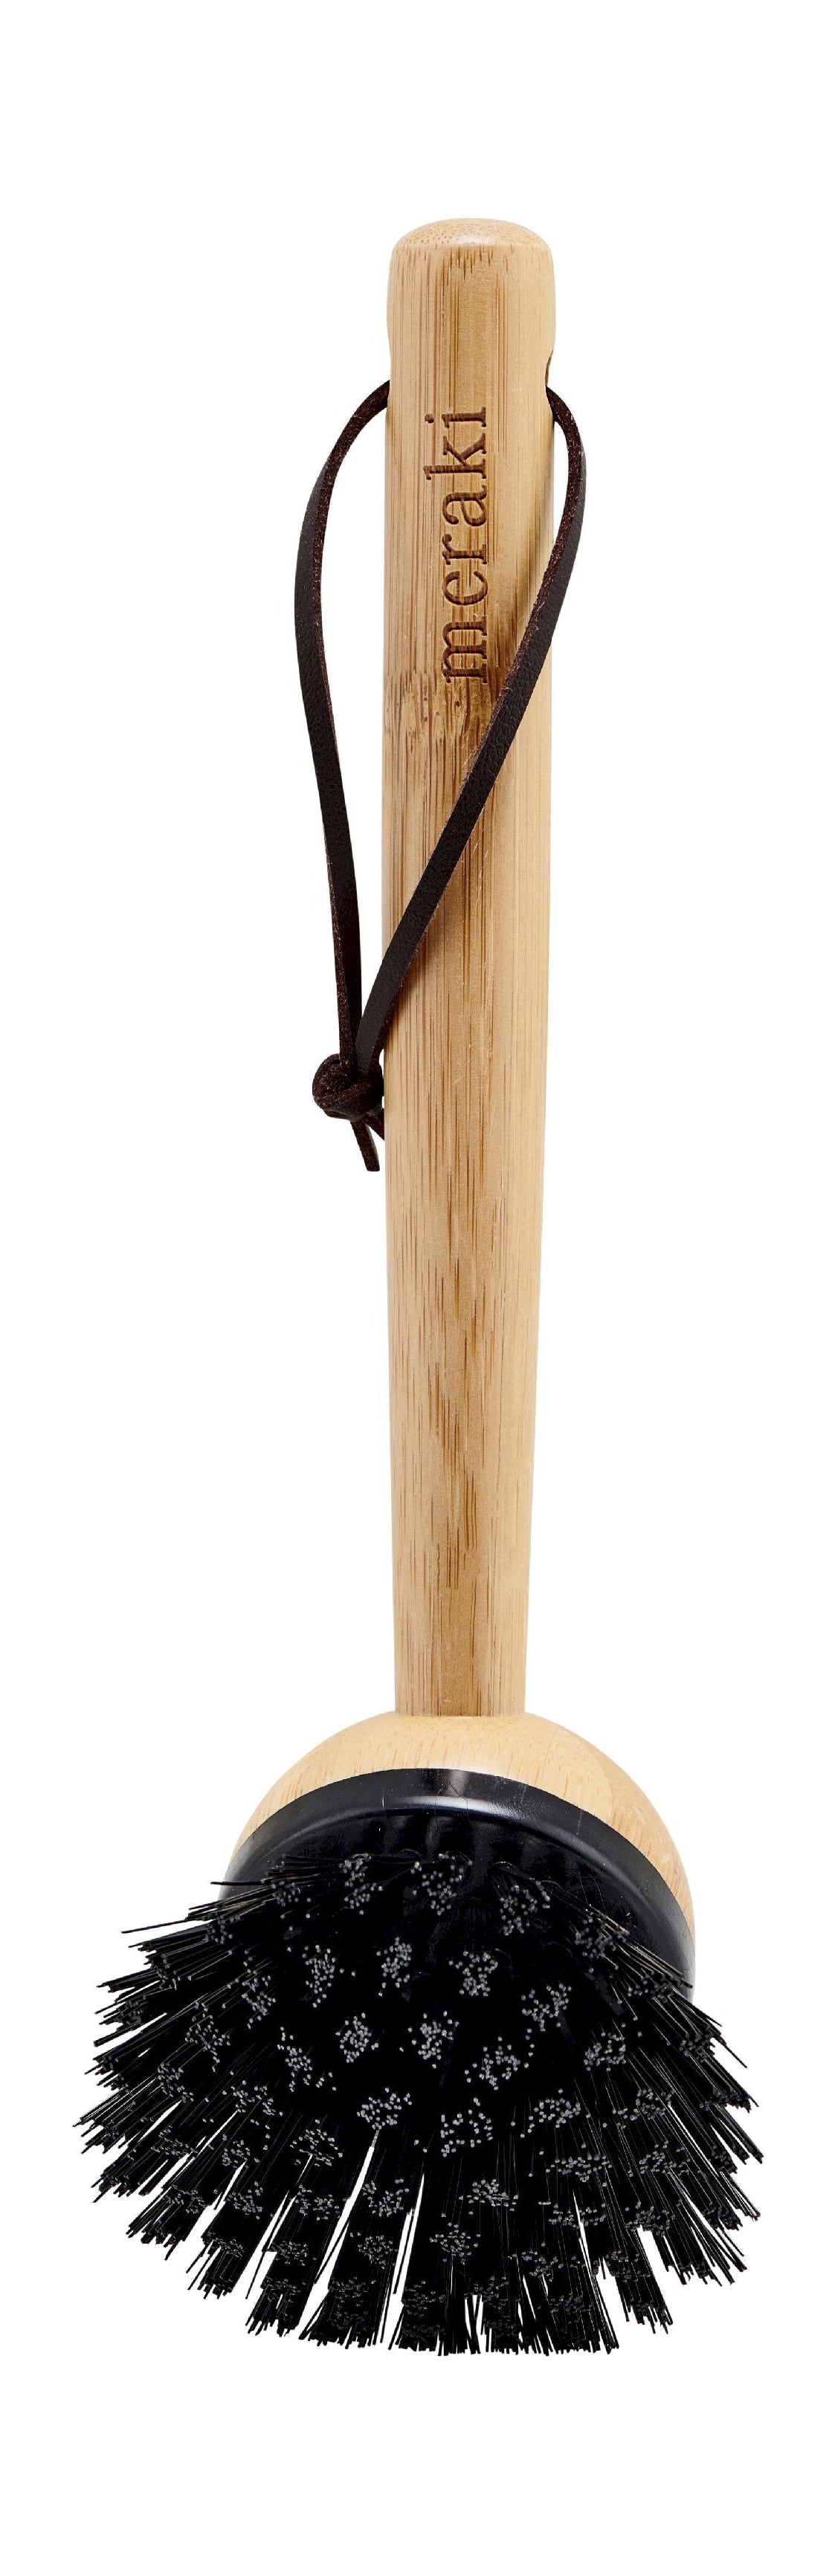 Meraki Dishwashing Brush Made Of Bamboo L22 Cm